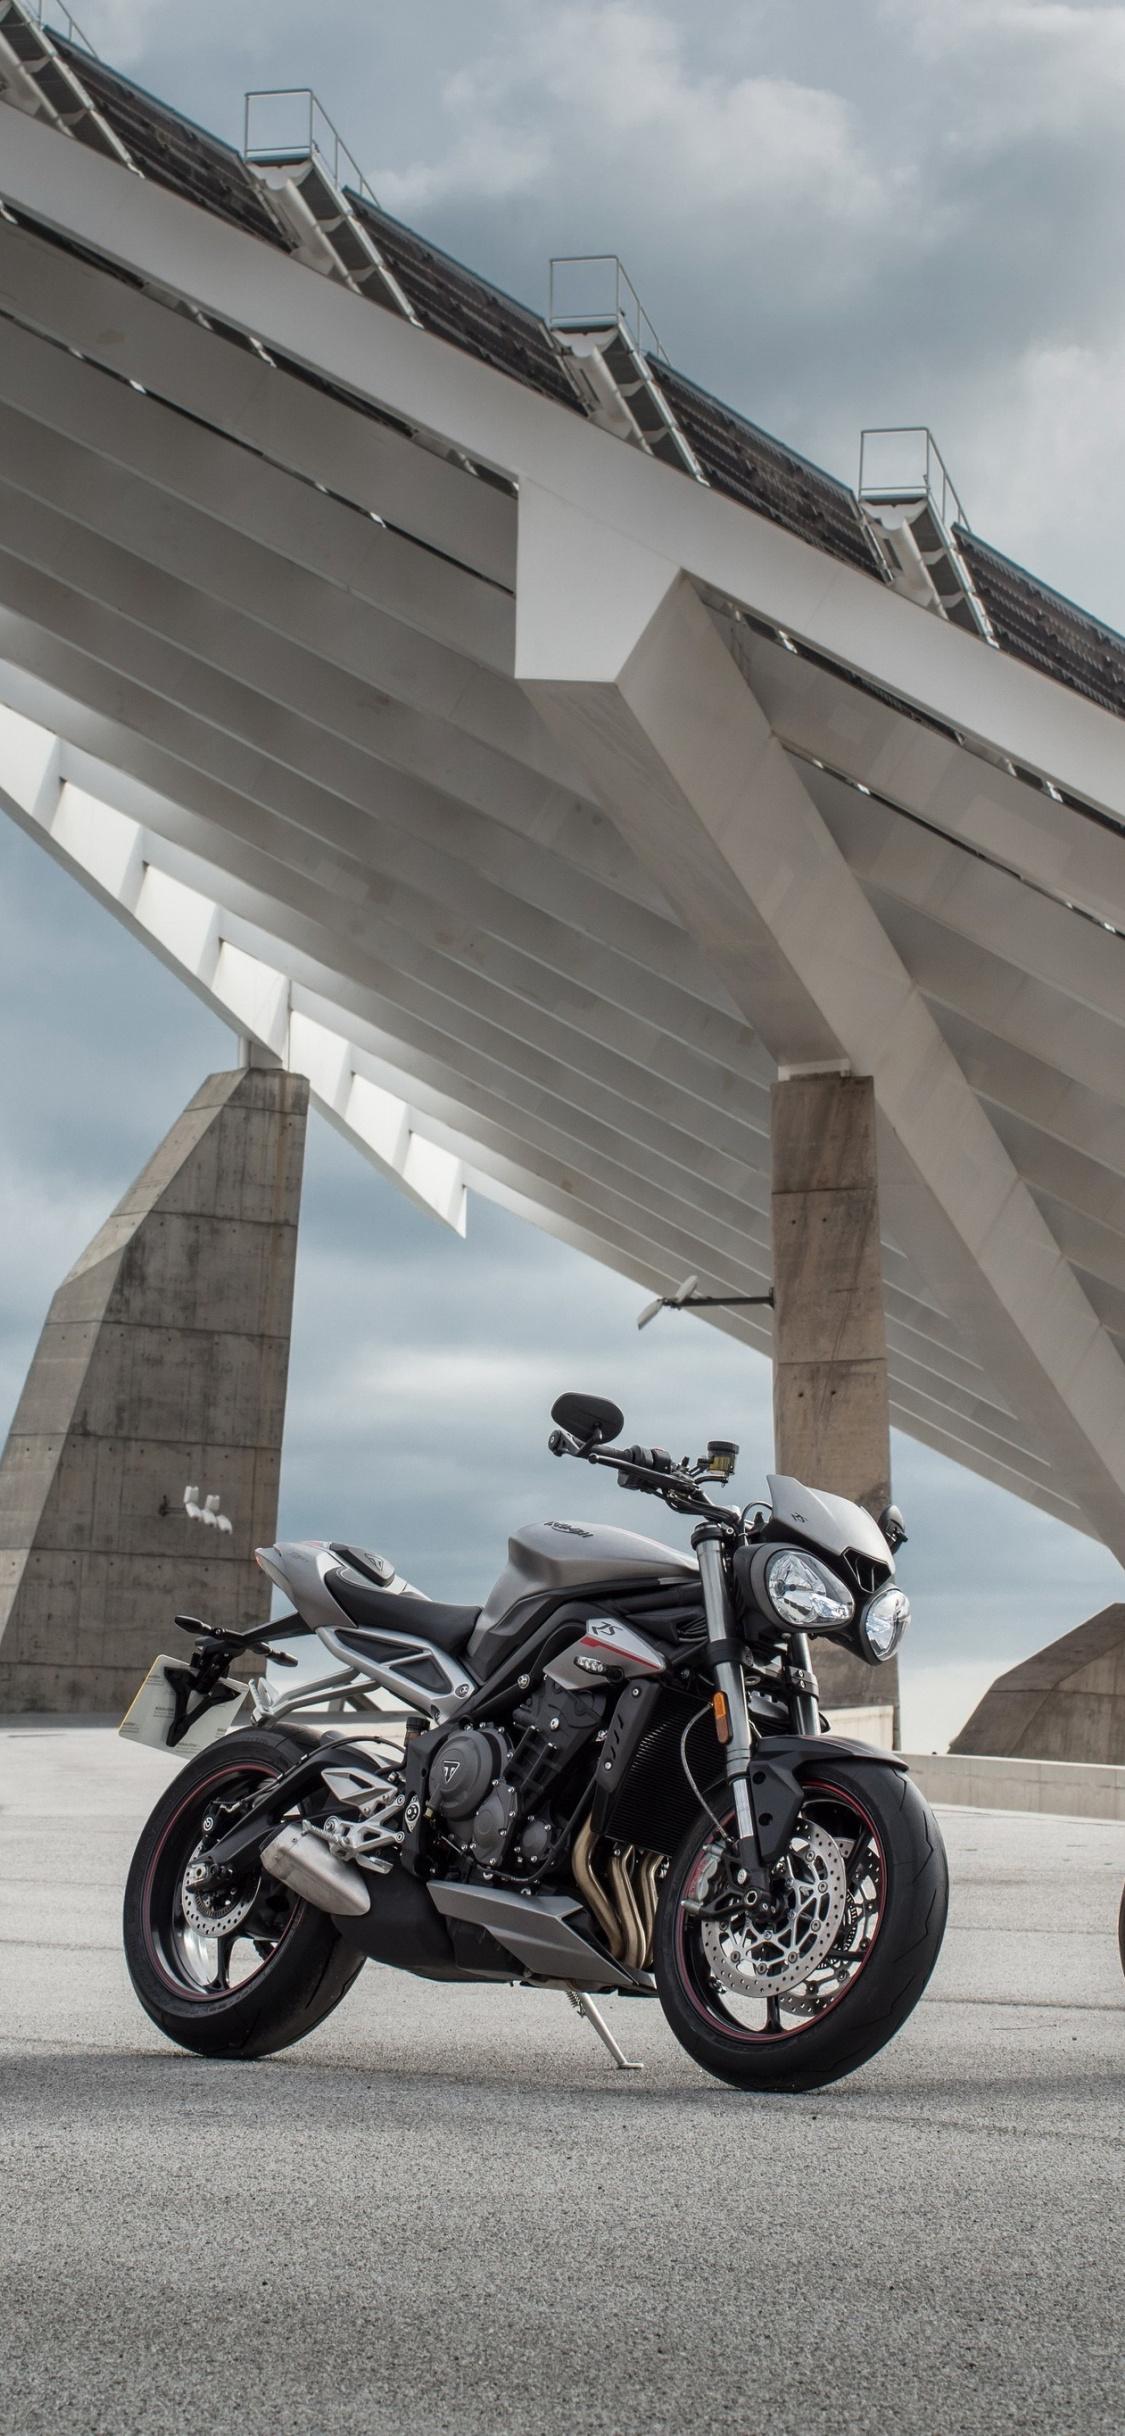 Download 1125x2436 wallpaper motorcycles, bike triumph